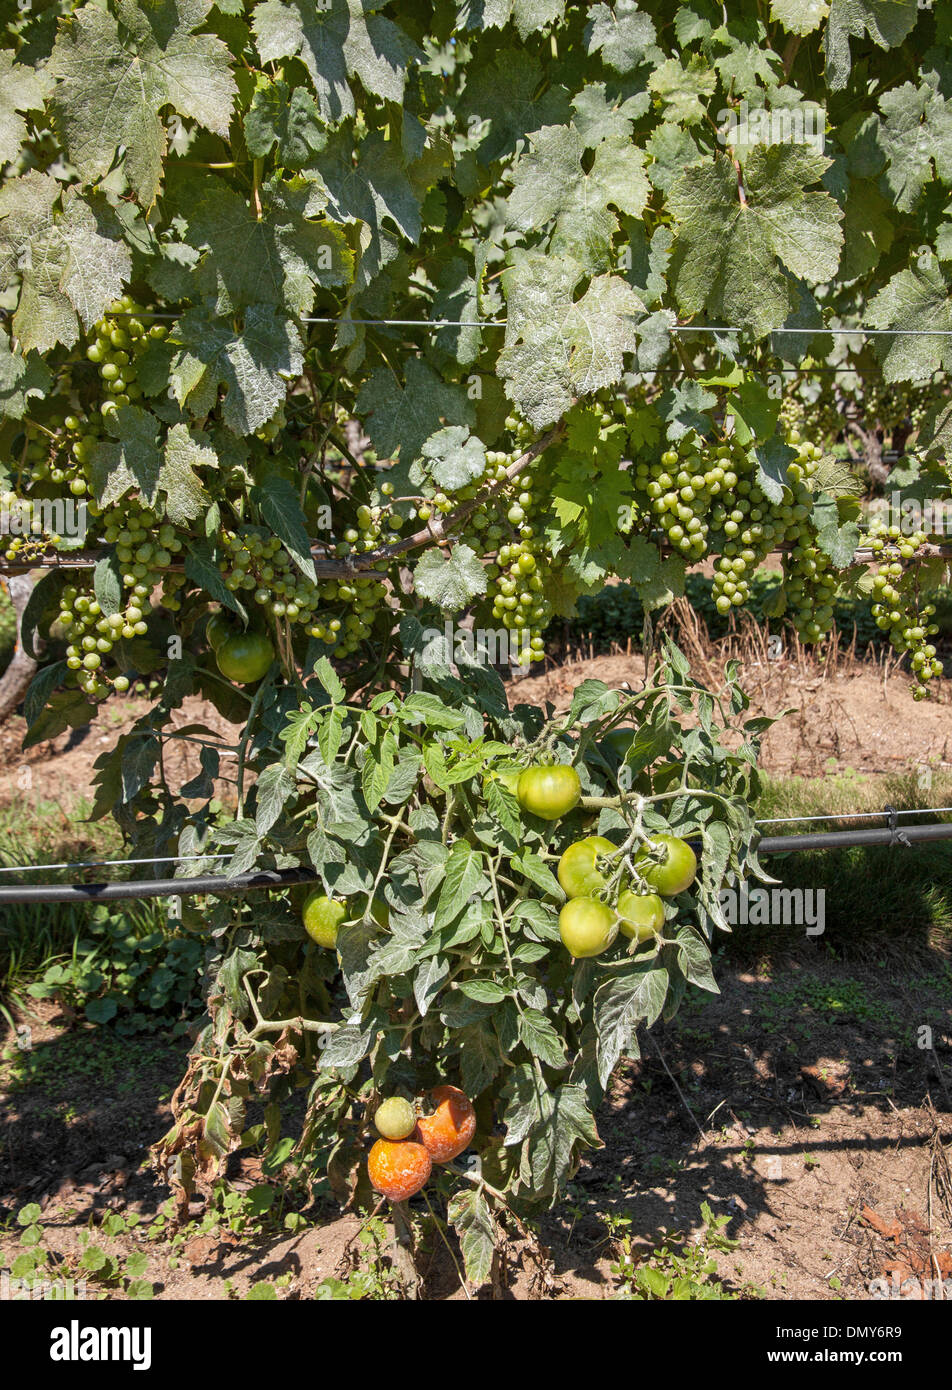 L'uva (frutta) e pomodori (vegetale) maturazione entrambi nella stessa posizione. Foto Stock